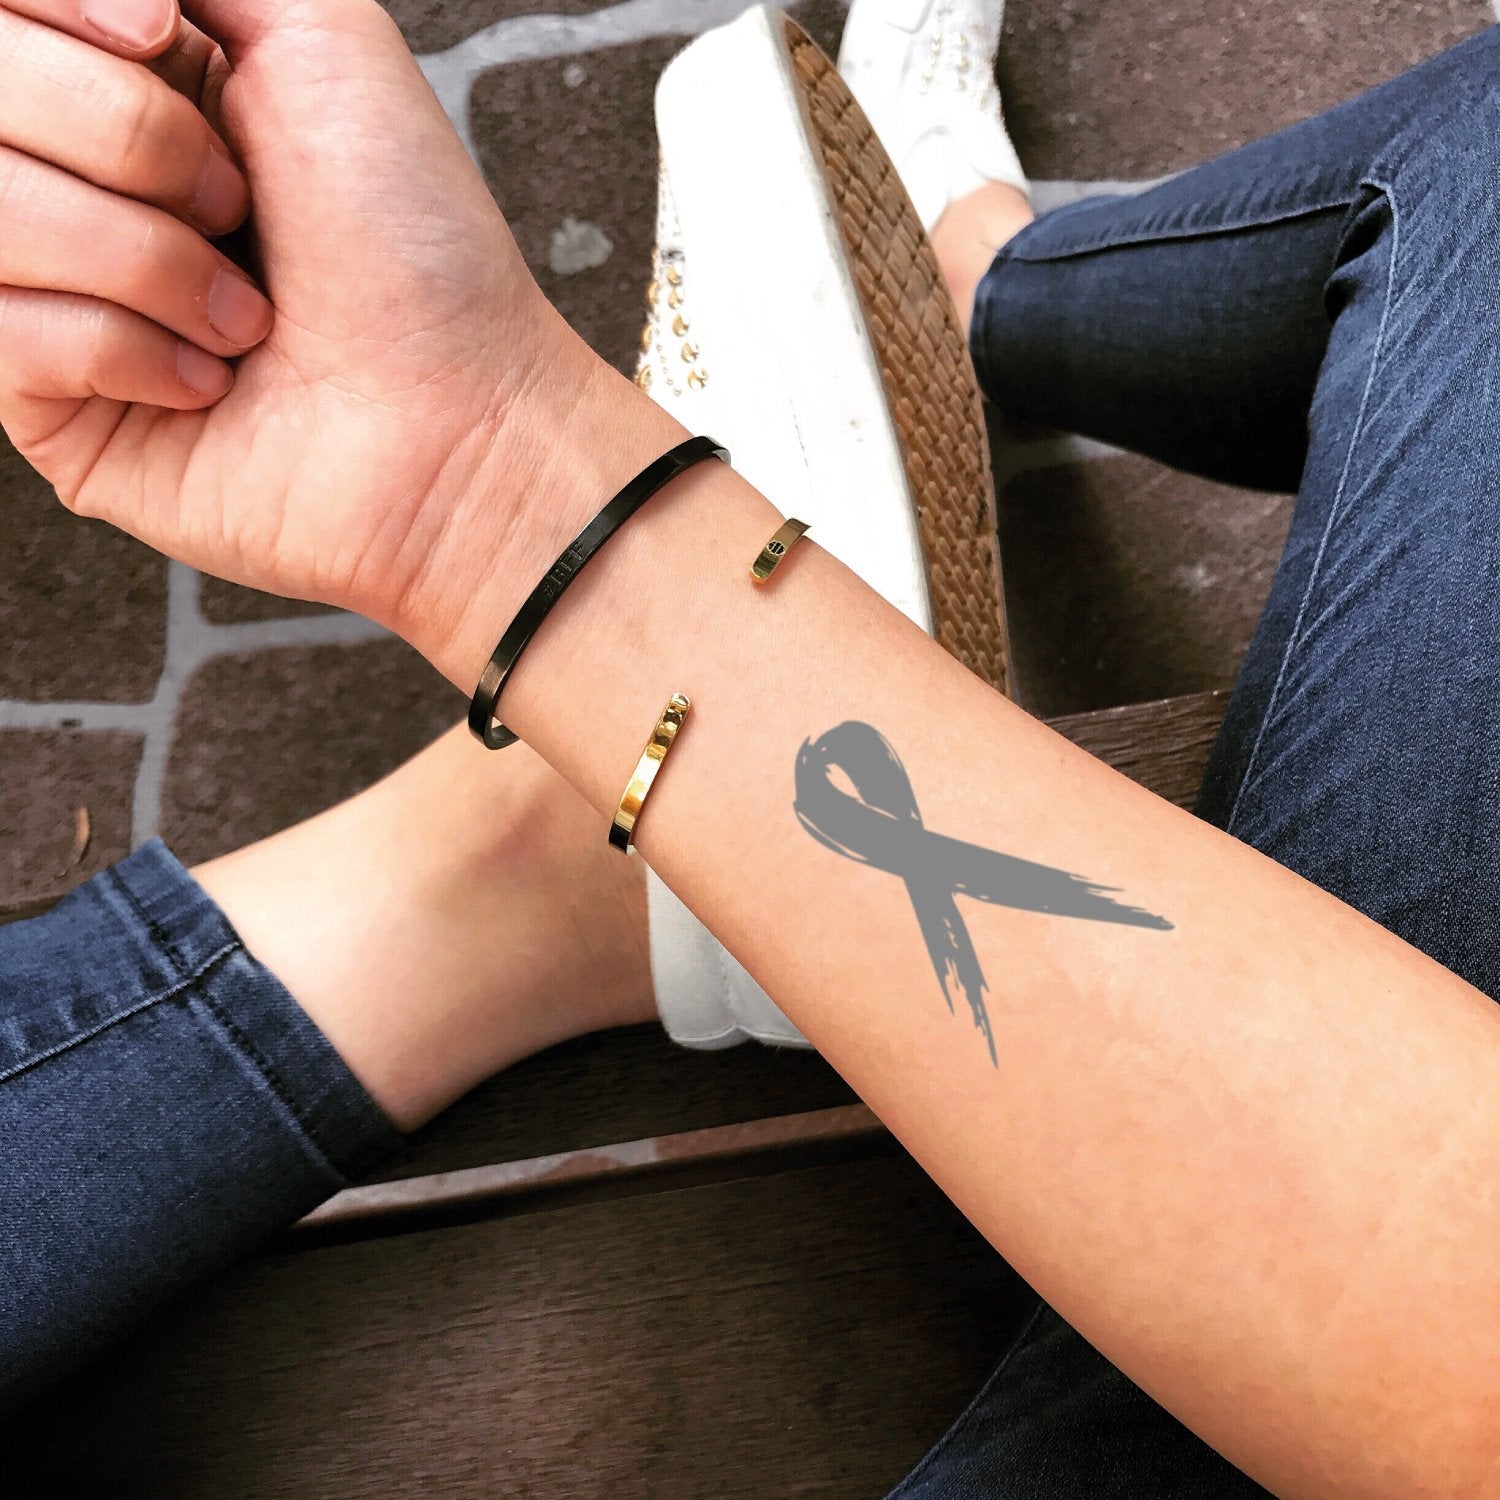 40 Awesome Tattoos for Breast Cancer Awareness | CafeMom.com